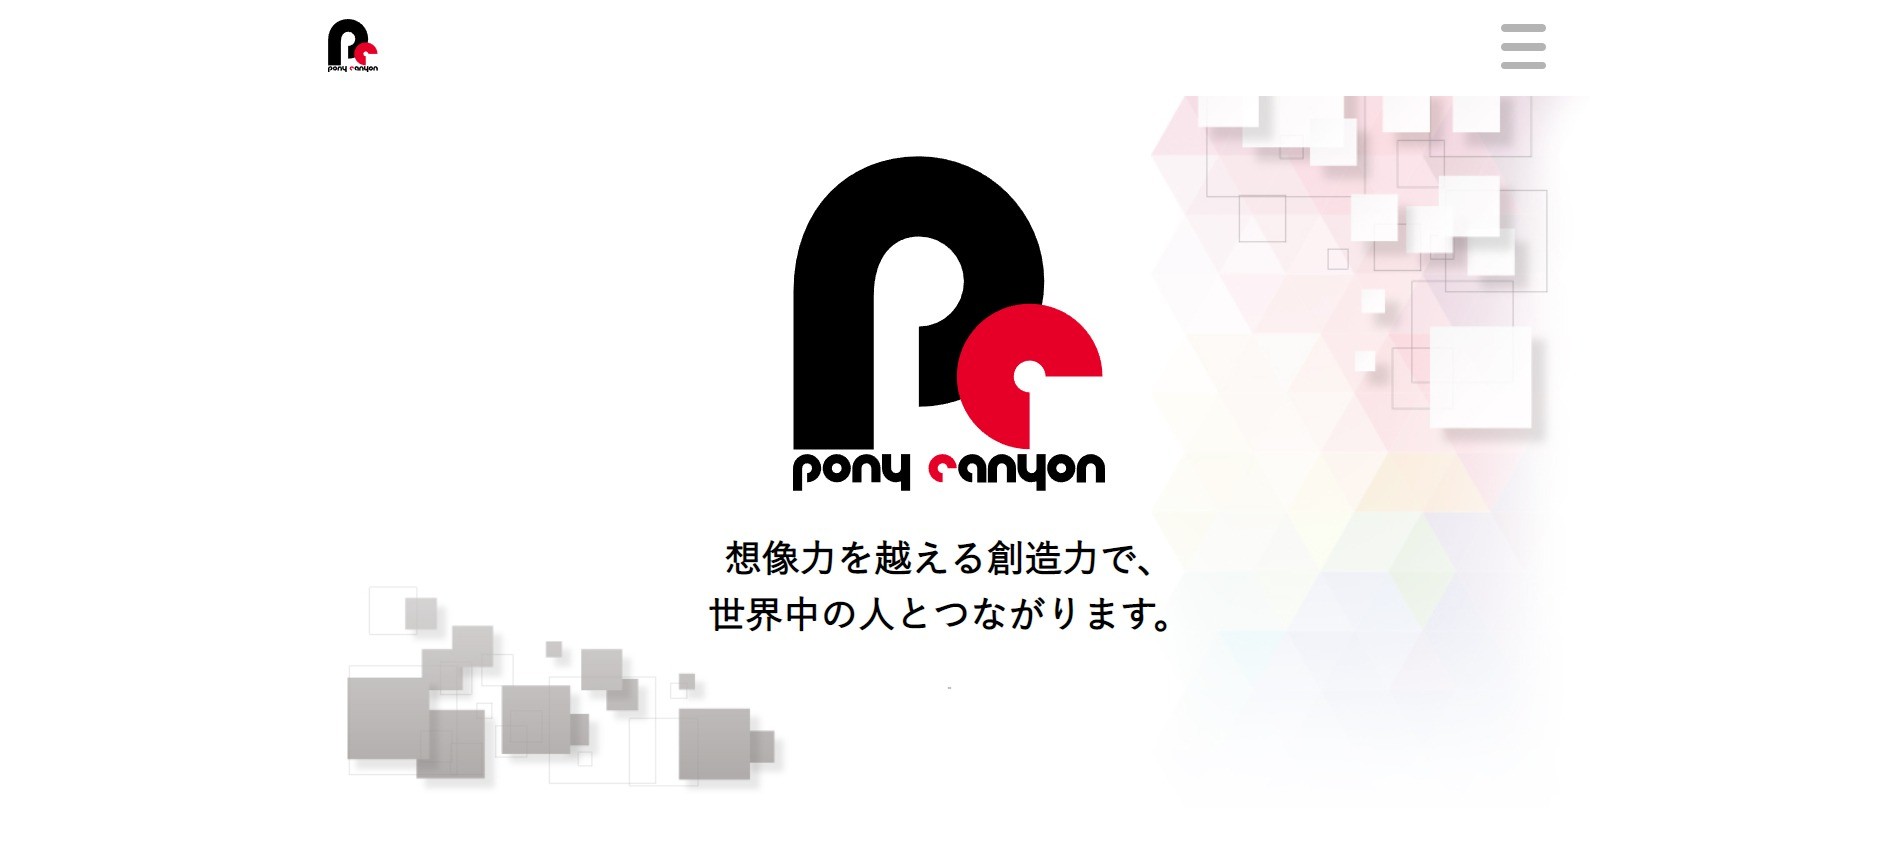 株式会社ポニーキャニオンのwebシステム開発